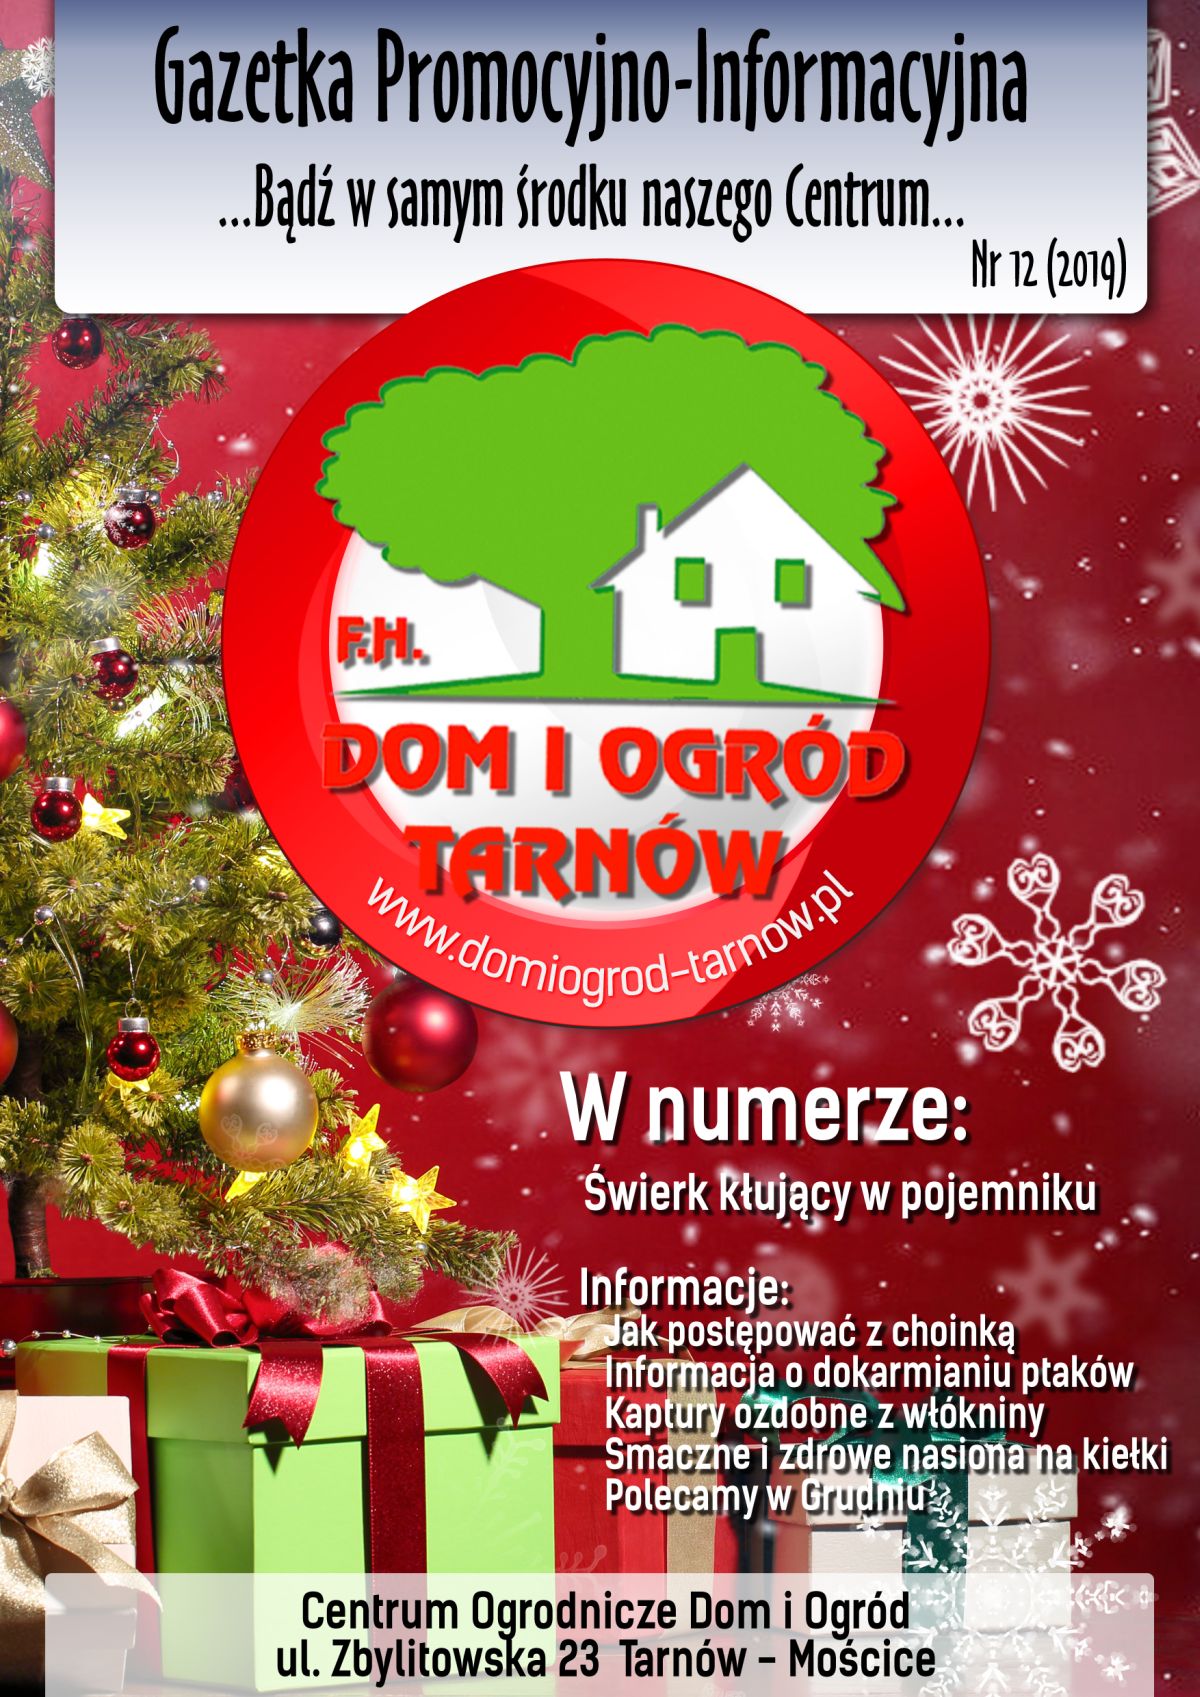 Gazetka Promocyjno-Informacyjna - 12/2019